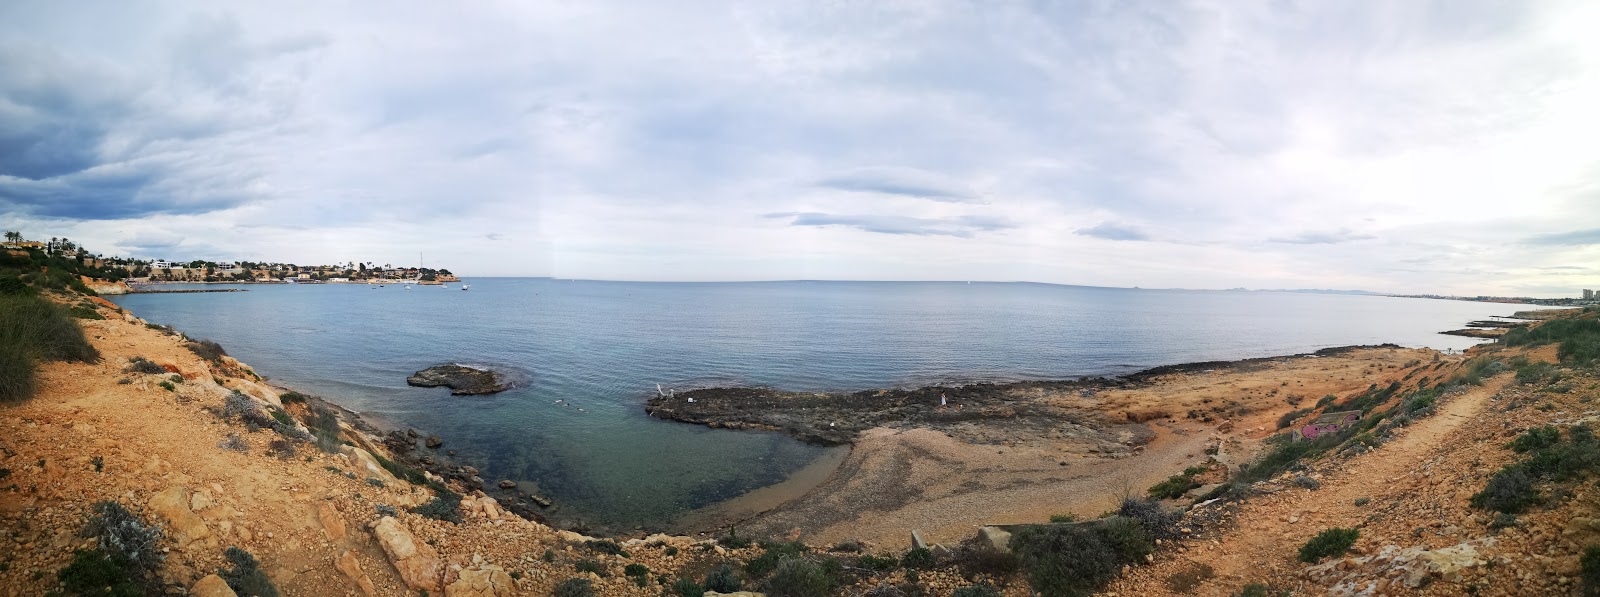 Platja la Caleta 2'in fotoğrafı kahverengi kum yüzey ile